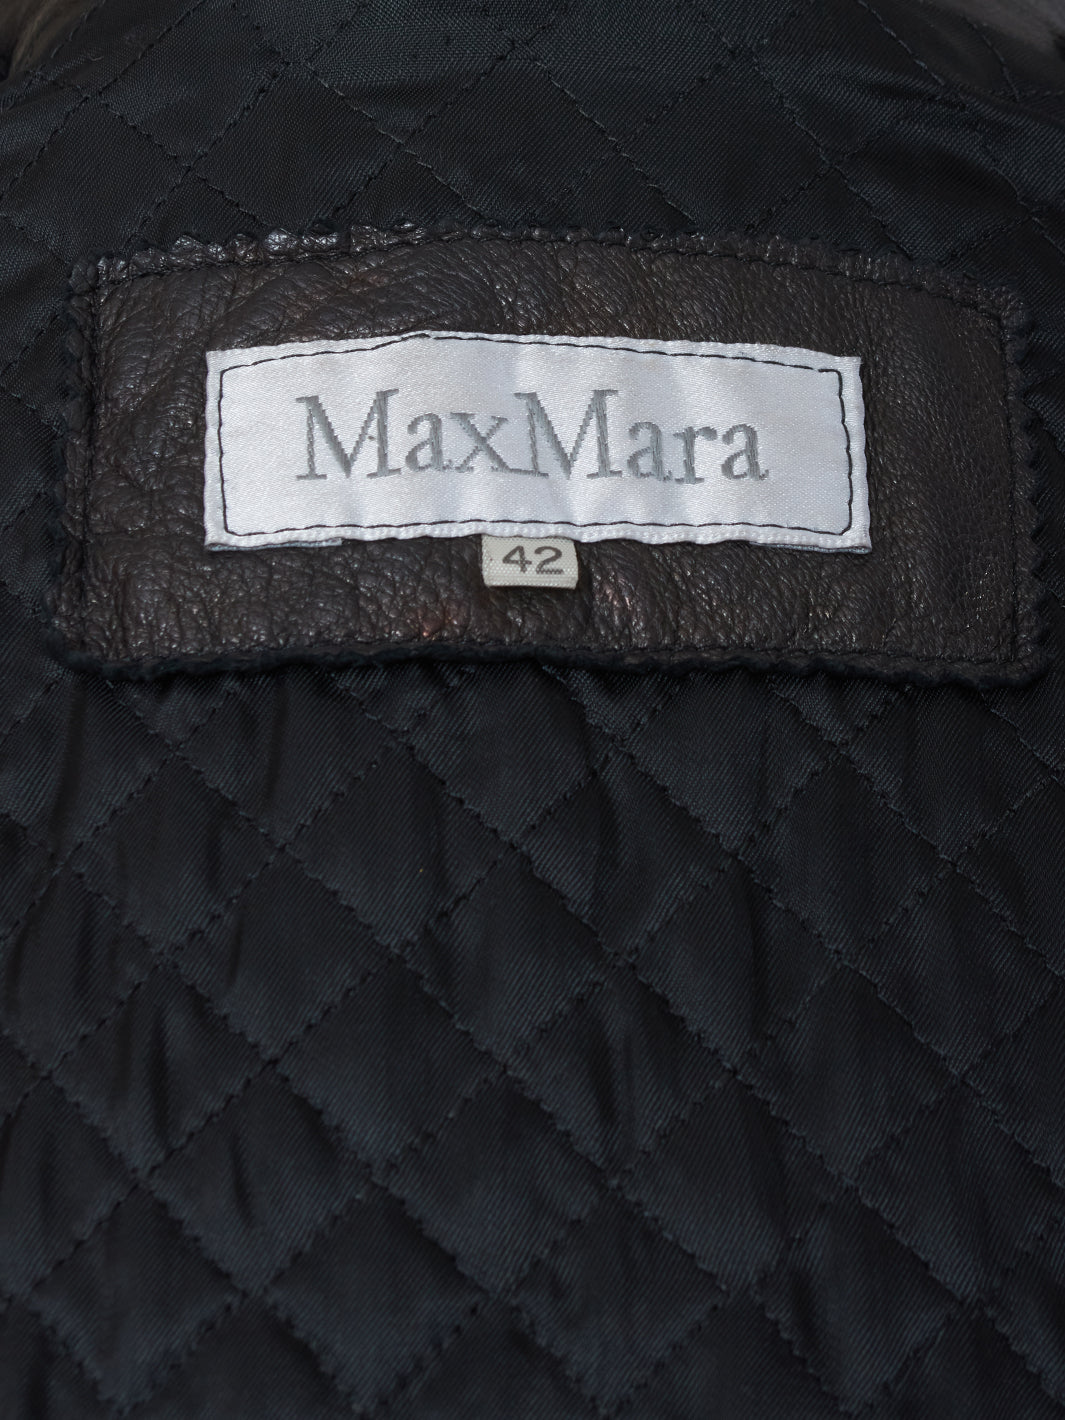 Max Mara Black Leather Jacket